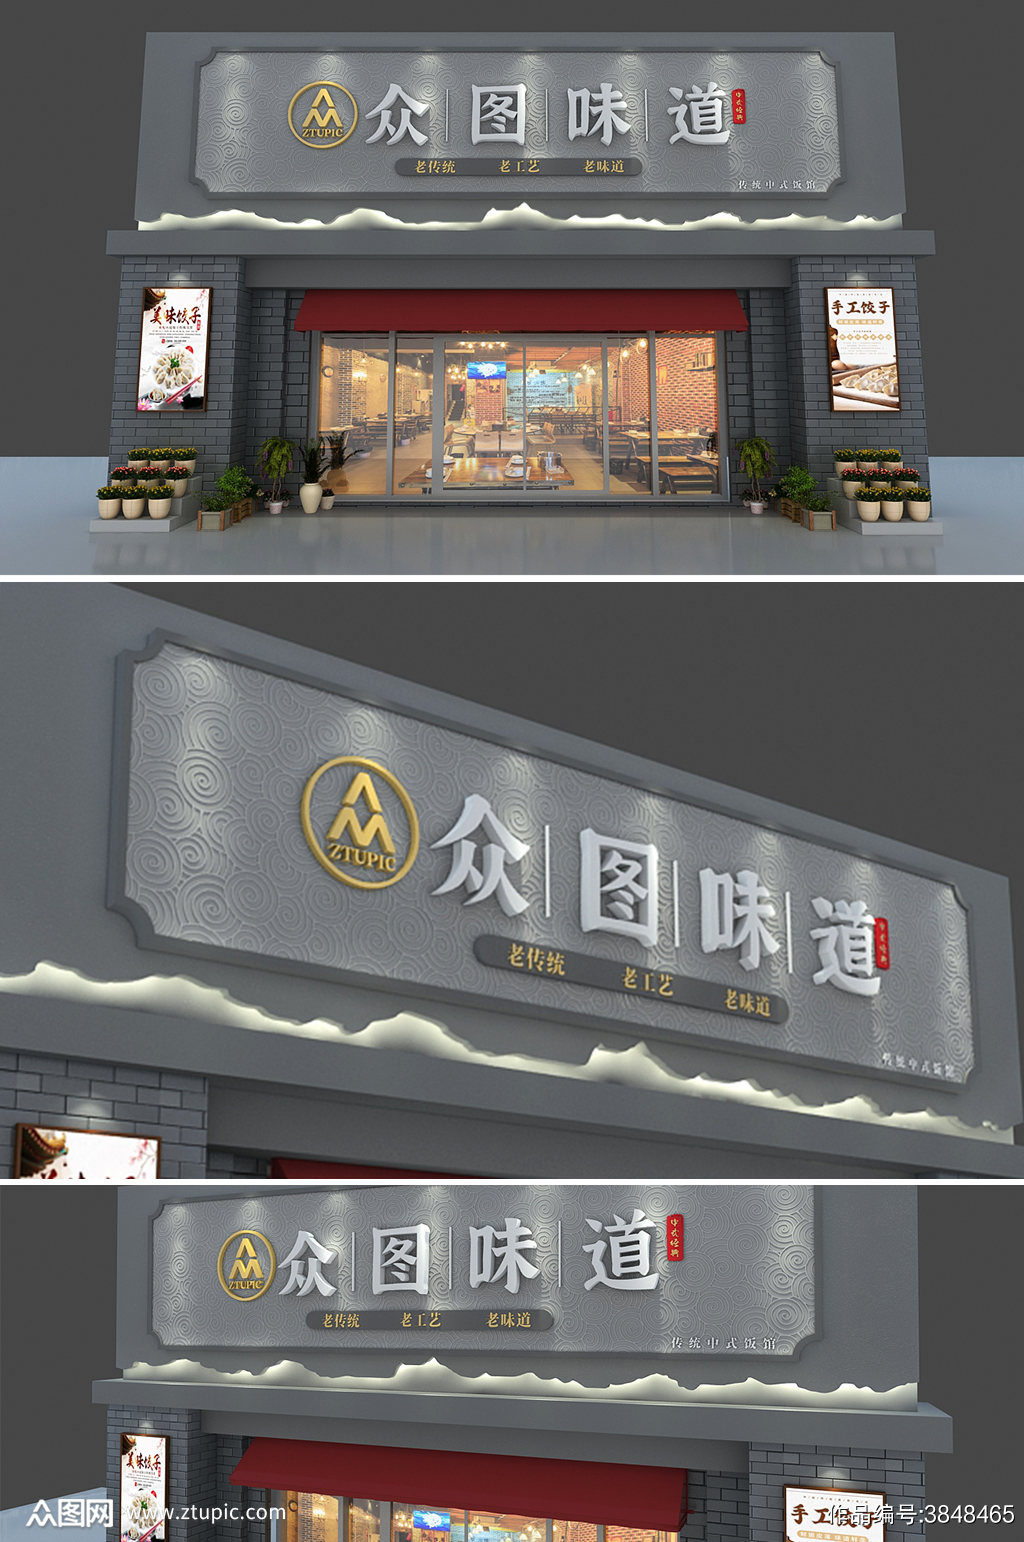 中式餐馆招牌品牌门头店面设计素材